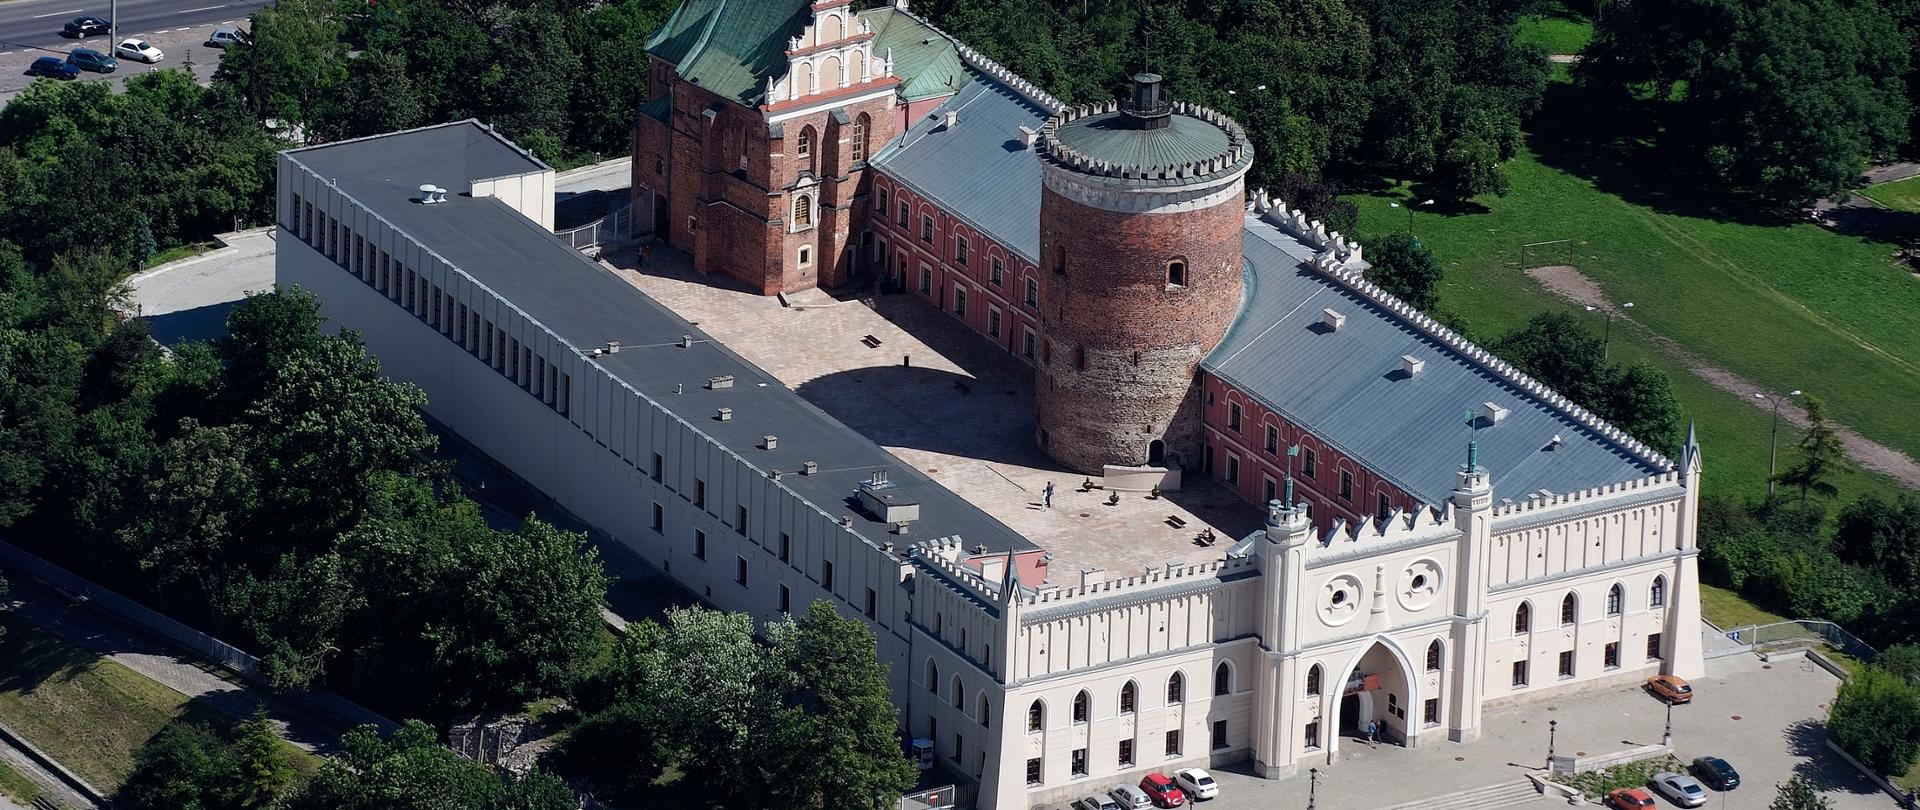 Zamek Lubelski – Muzeum Narodowe w Lublinie
